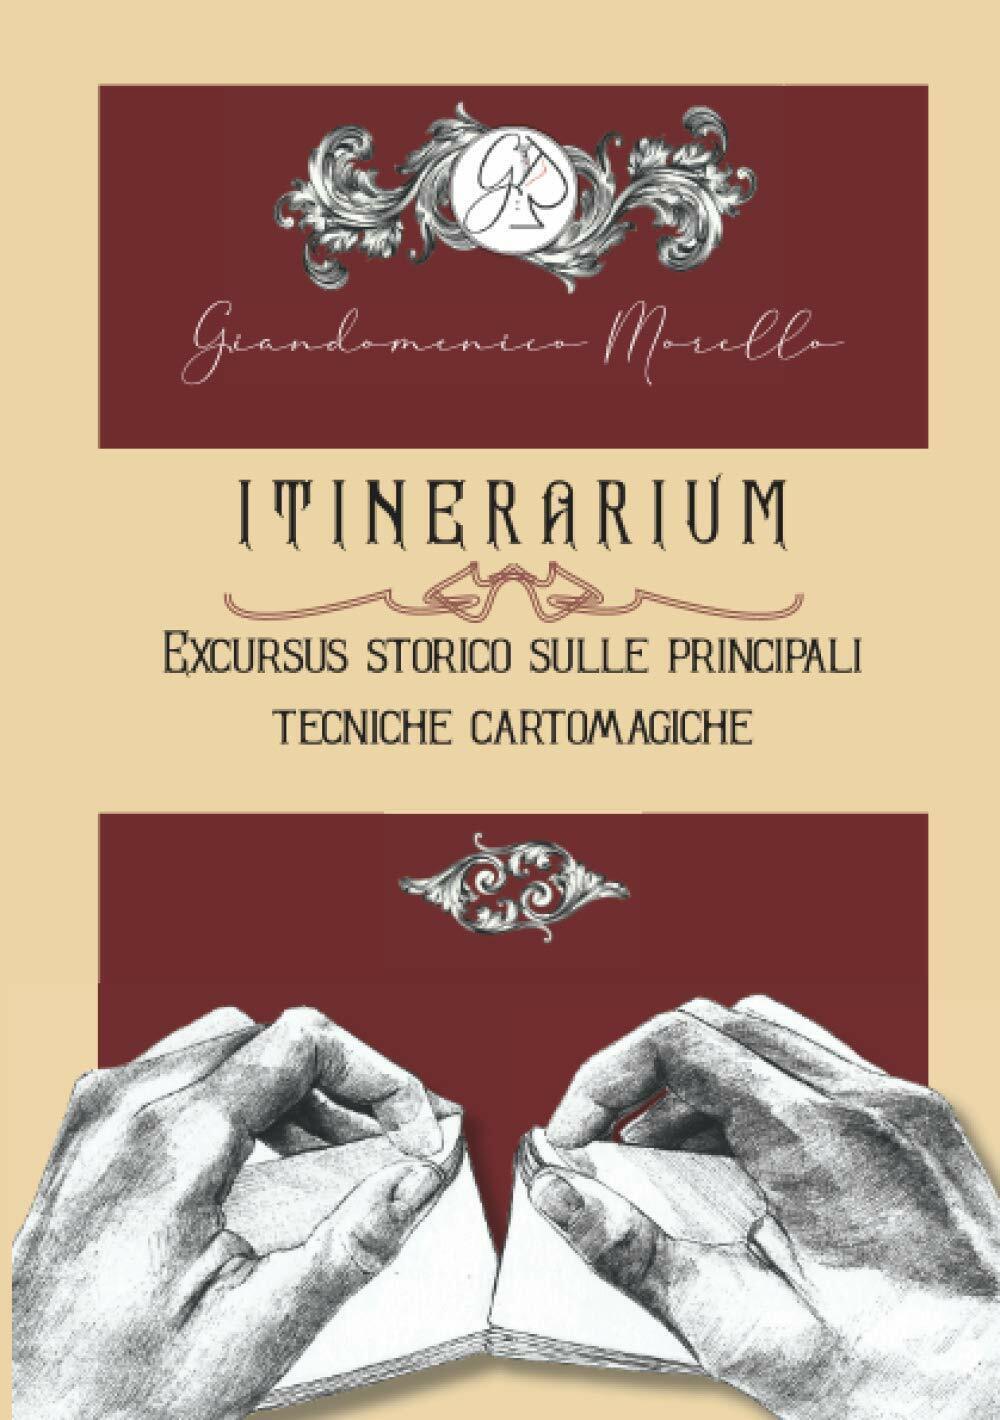 ITINERARIUM Excursus storico sulle principali tecniche cartomagiche di Giandomen